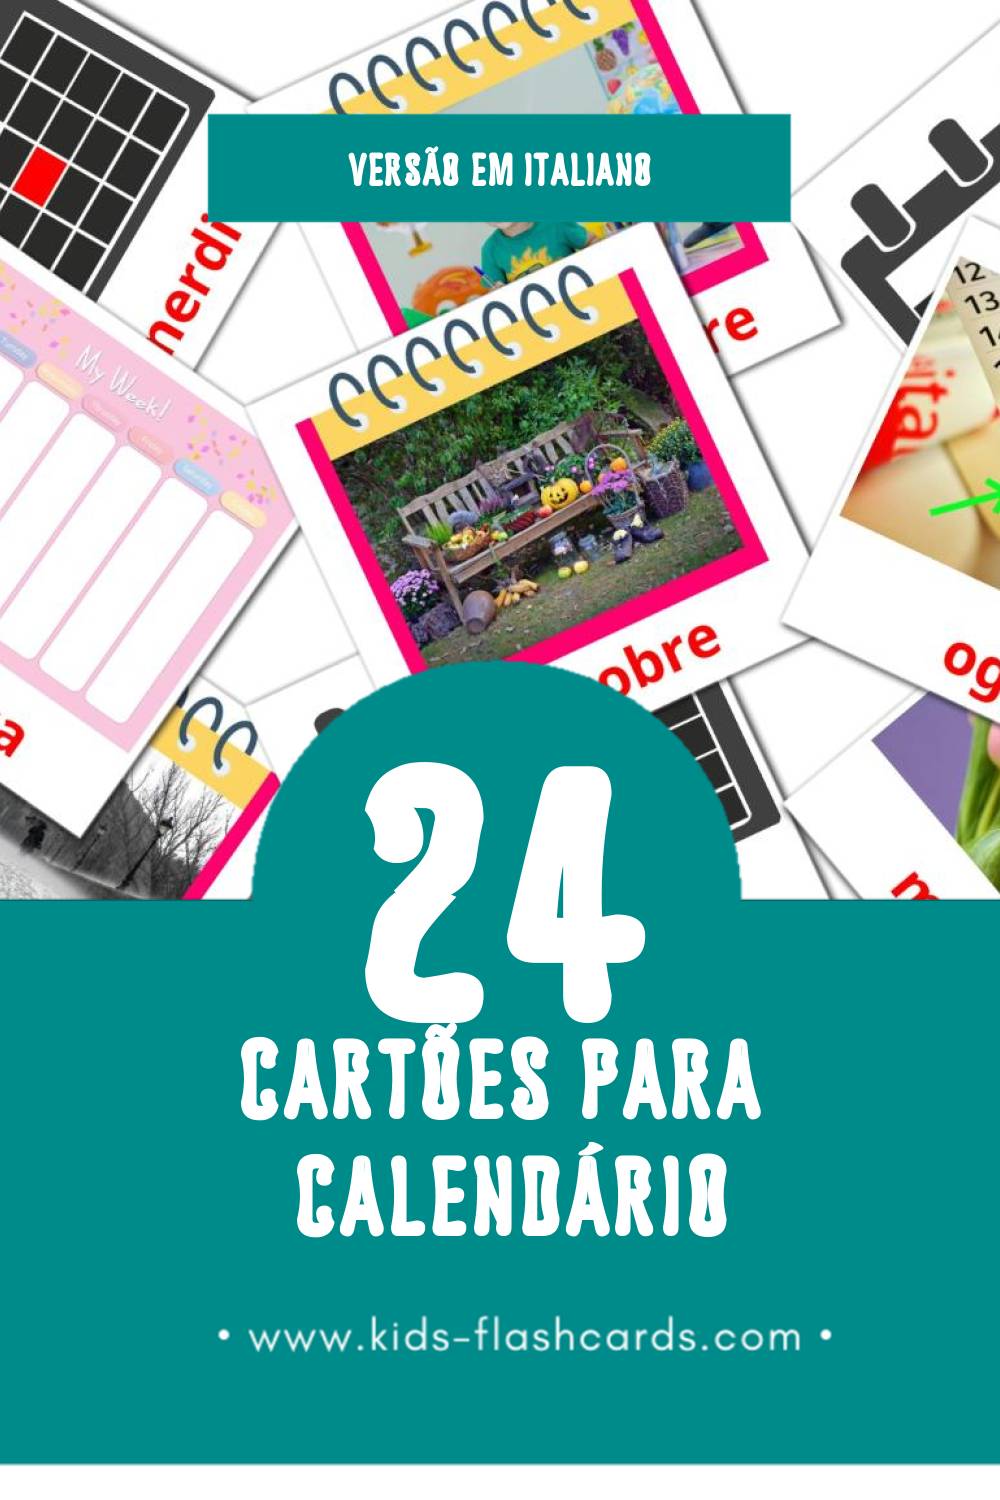 Flashcards de Calendario Visuais para Toddlers (24 cartões em Italiano)